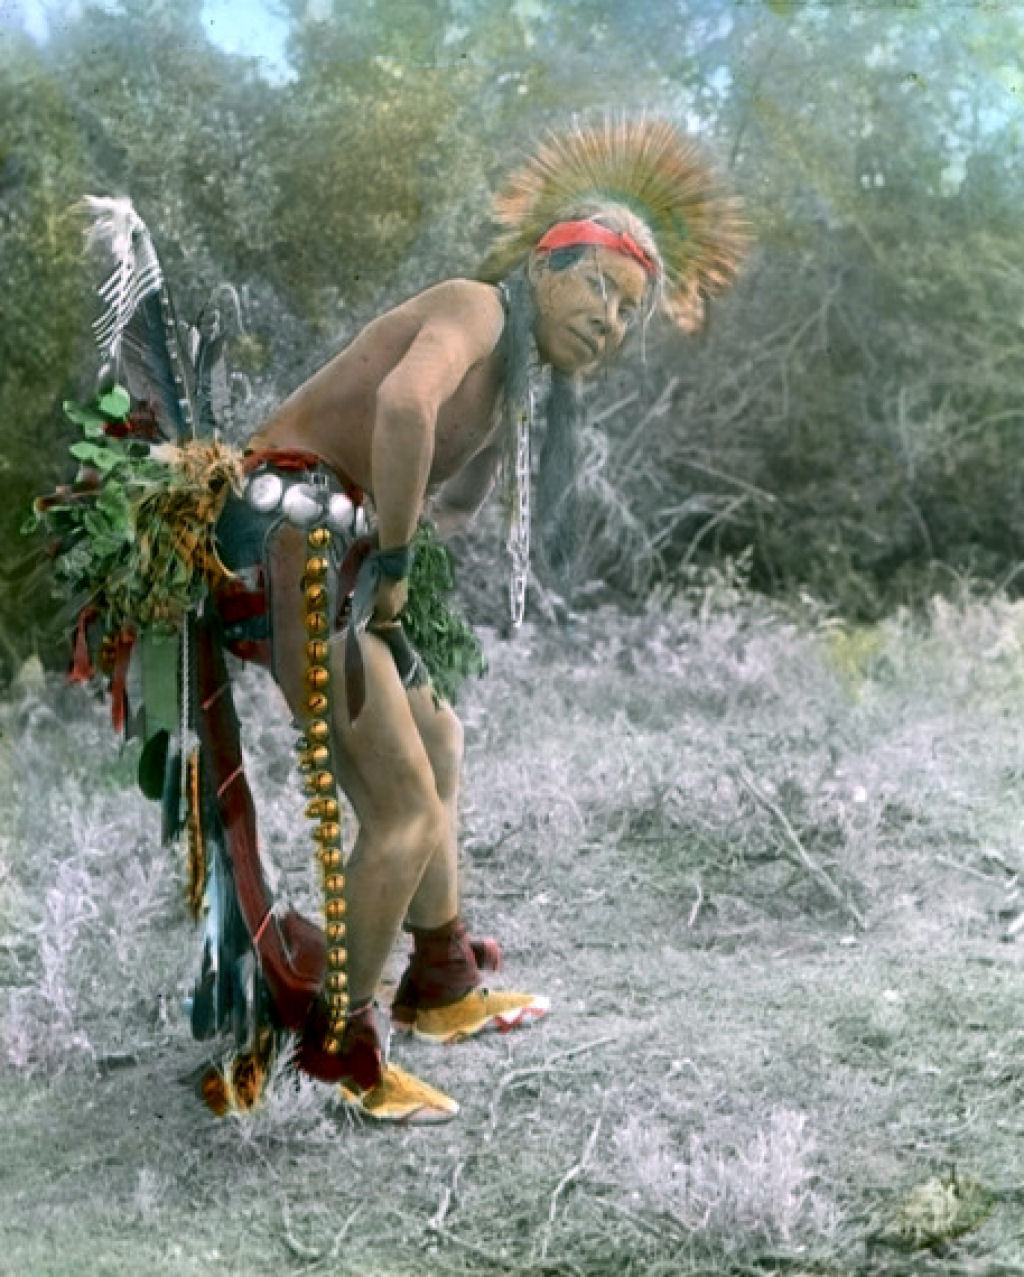 Impressionantes fotos históricas coloridas de nativos americanos do final do século 19 e início do século 20 15